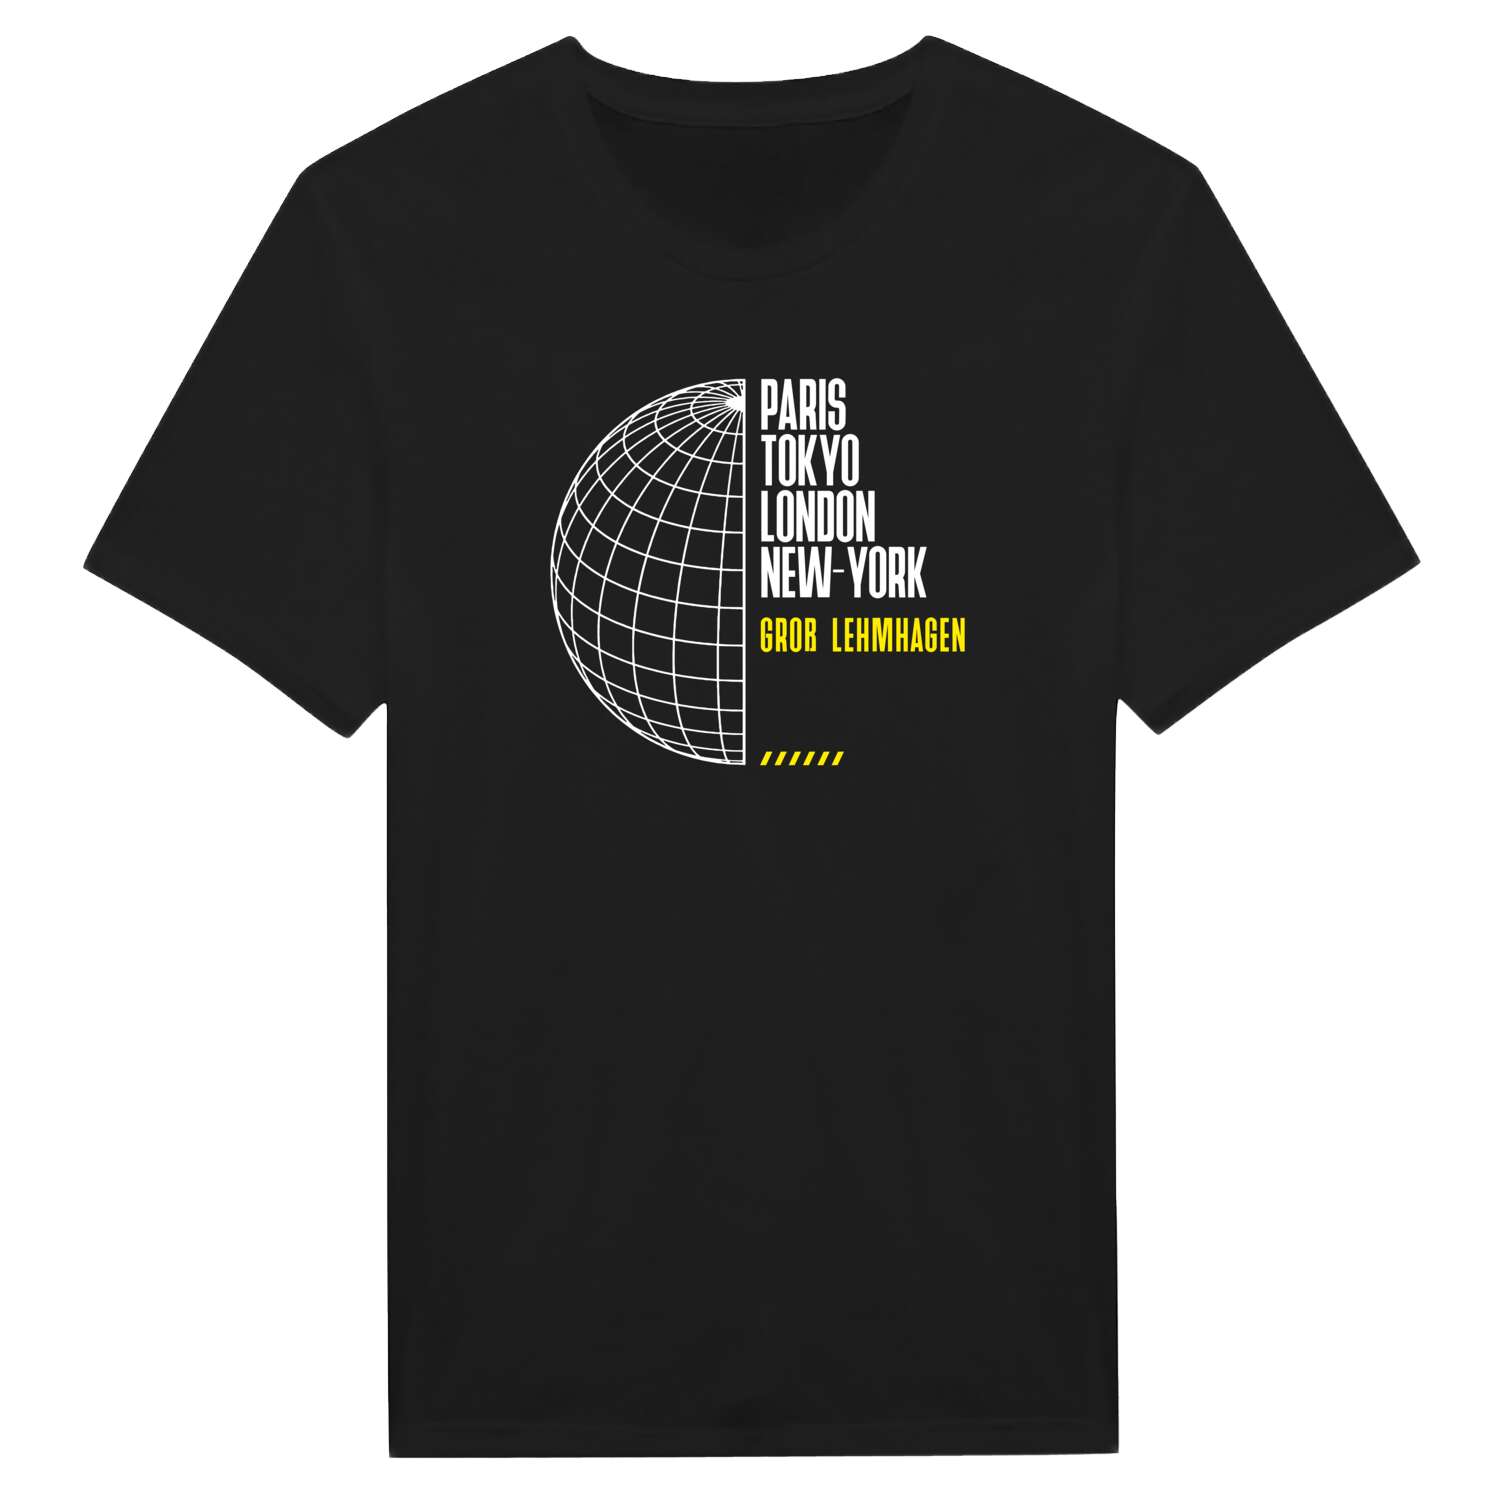 Groß Lehmhagen T-Shirt »Paris Tokyo London«